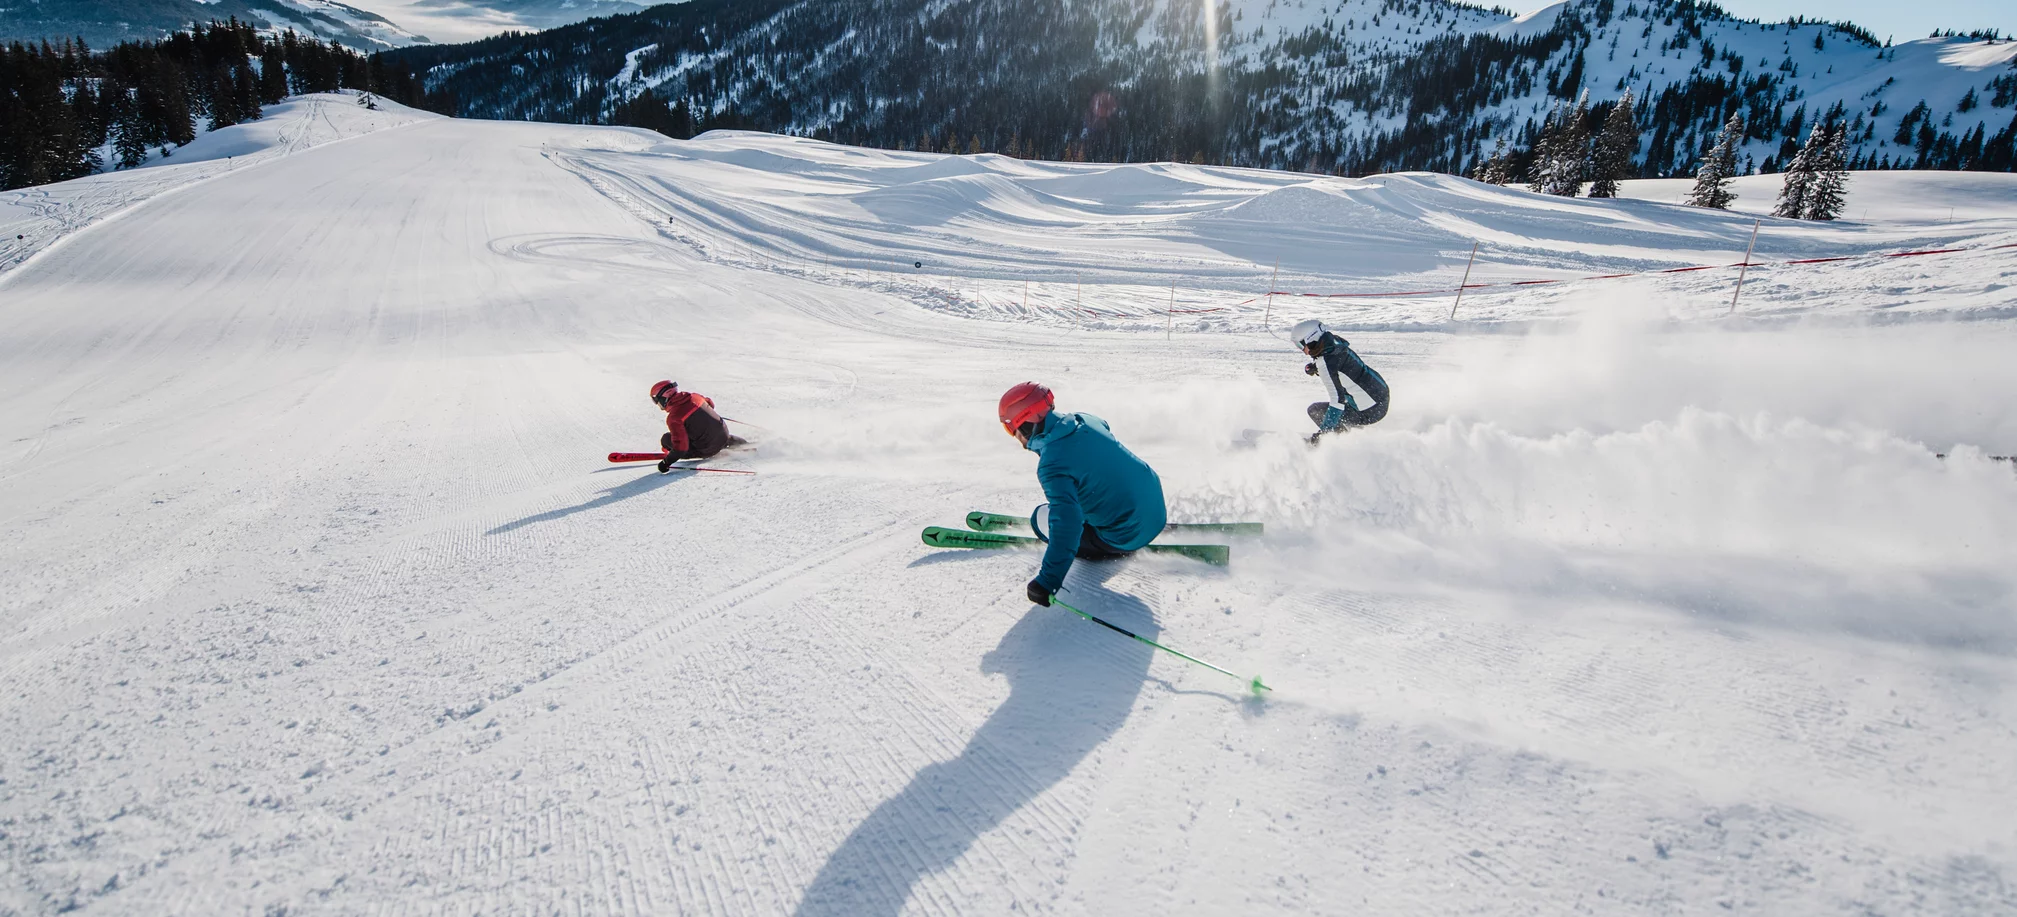 Ski amadé Season pass : Season pass & discounts in advance